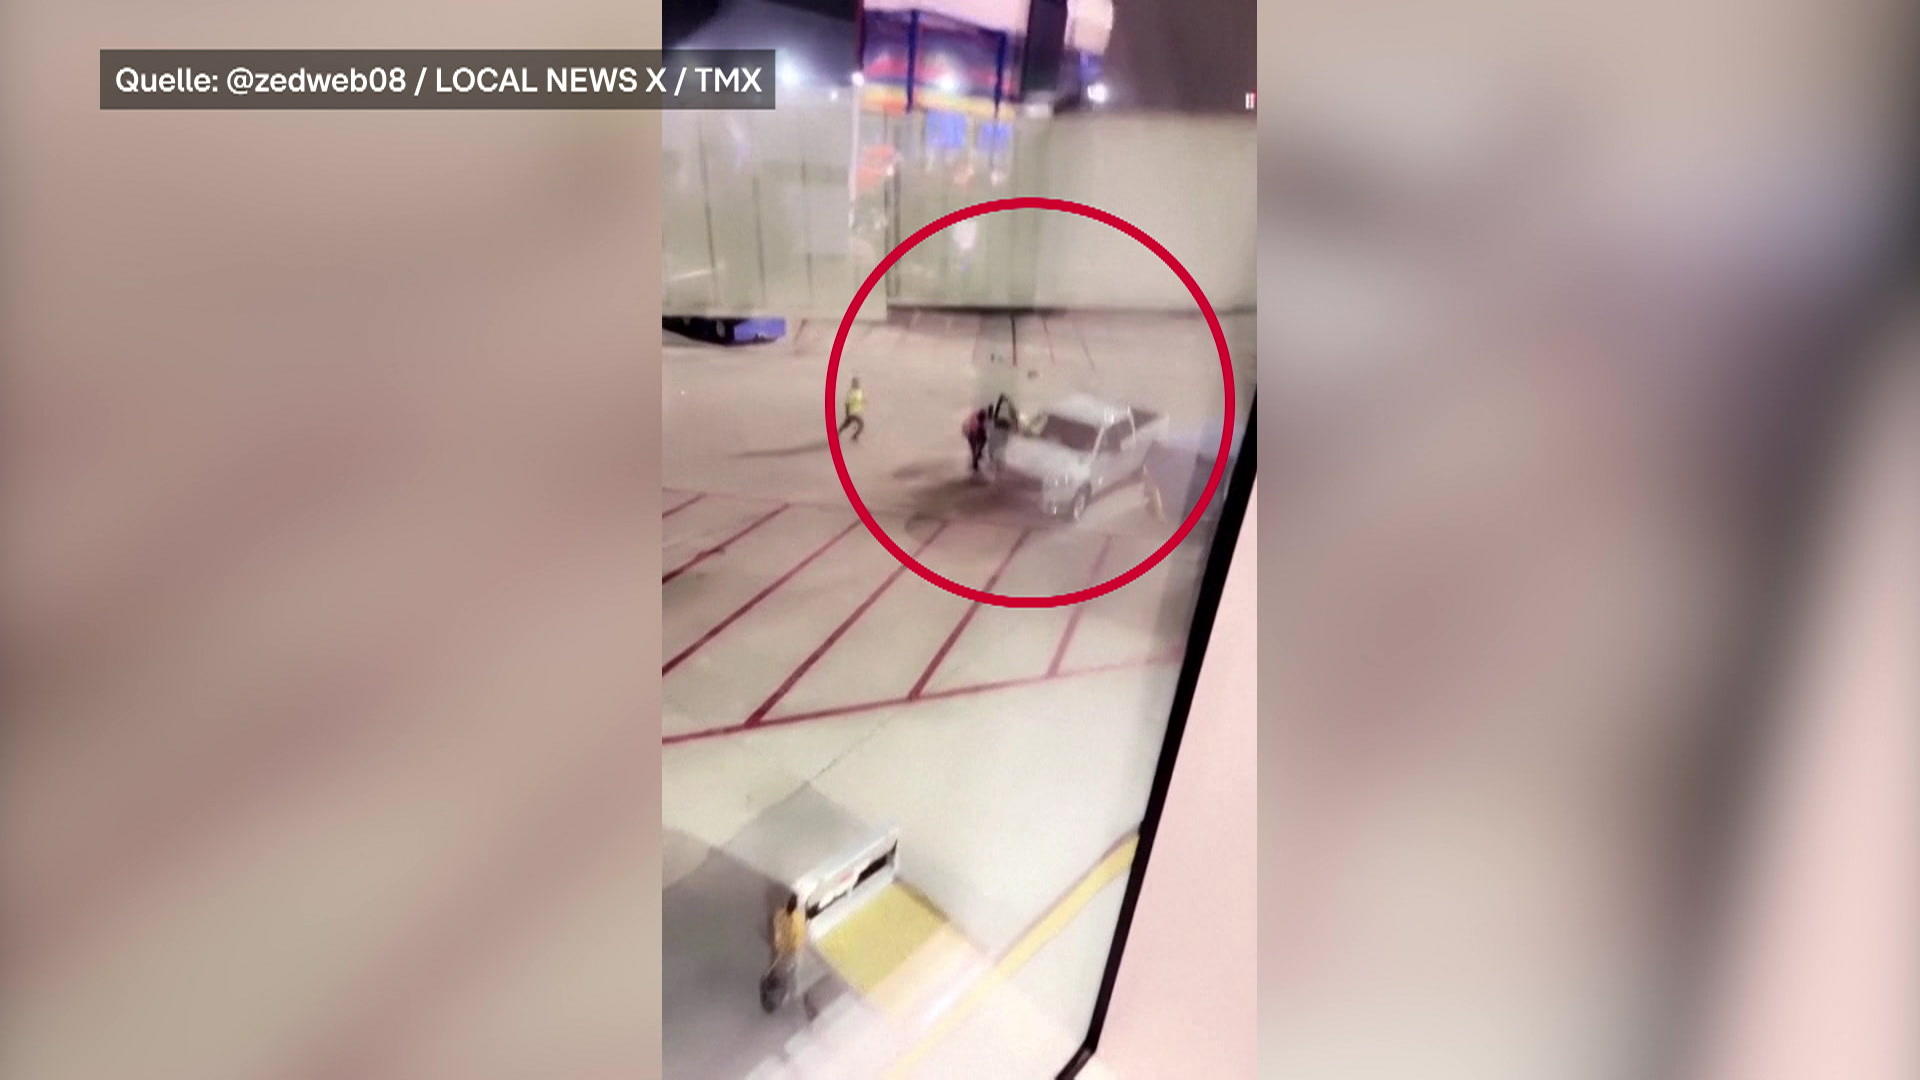 Mann springt aus Flieger - Panik bricht aus Schock-Moment am Flughafen von New Orleans